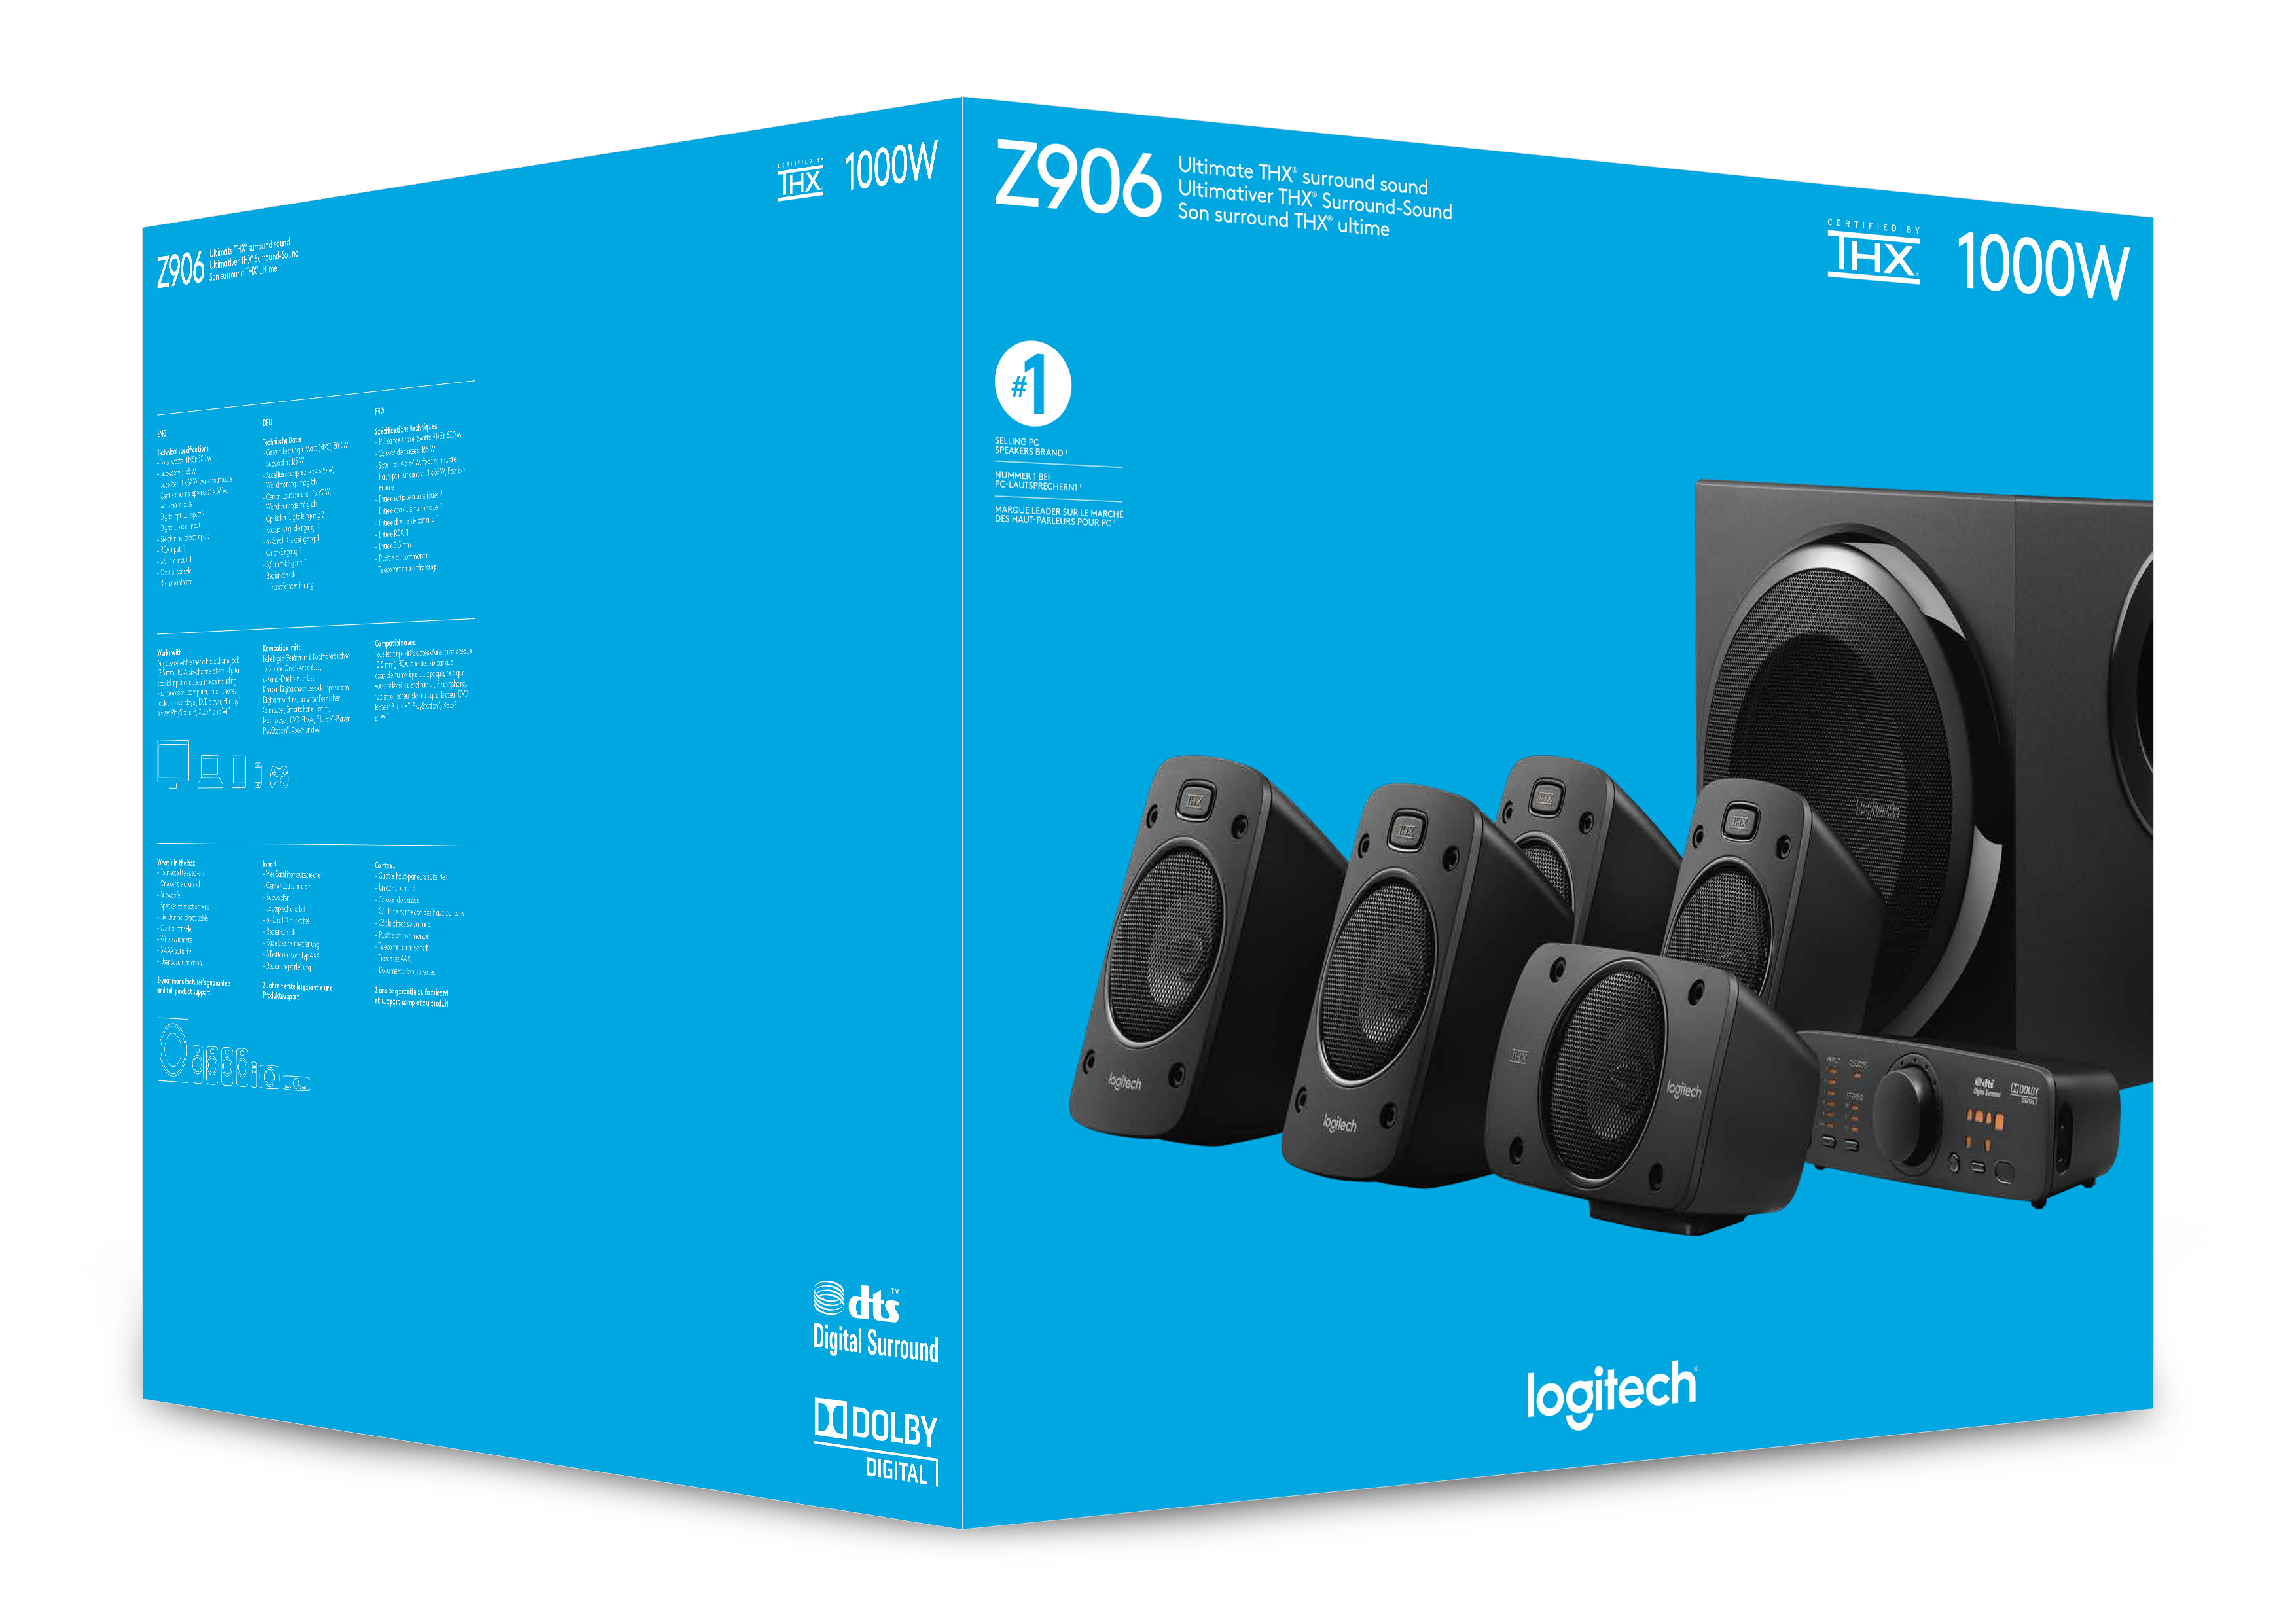 Logitech Speaker Z906 black retail